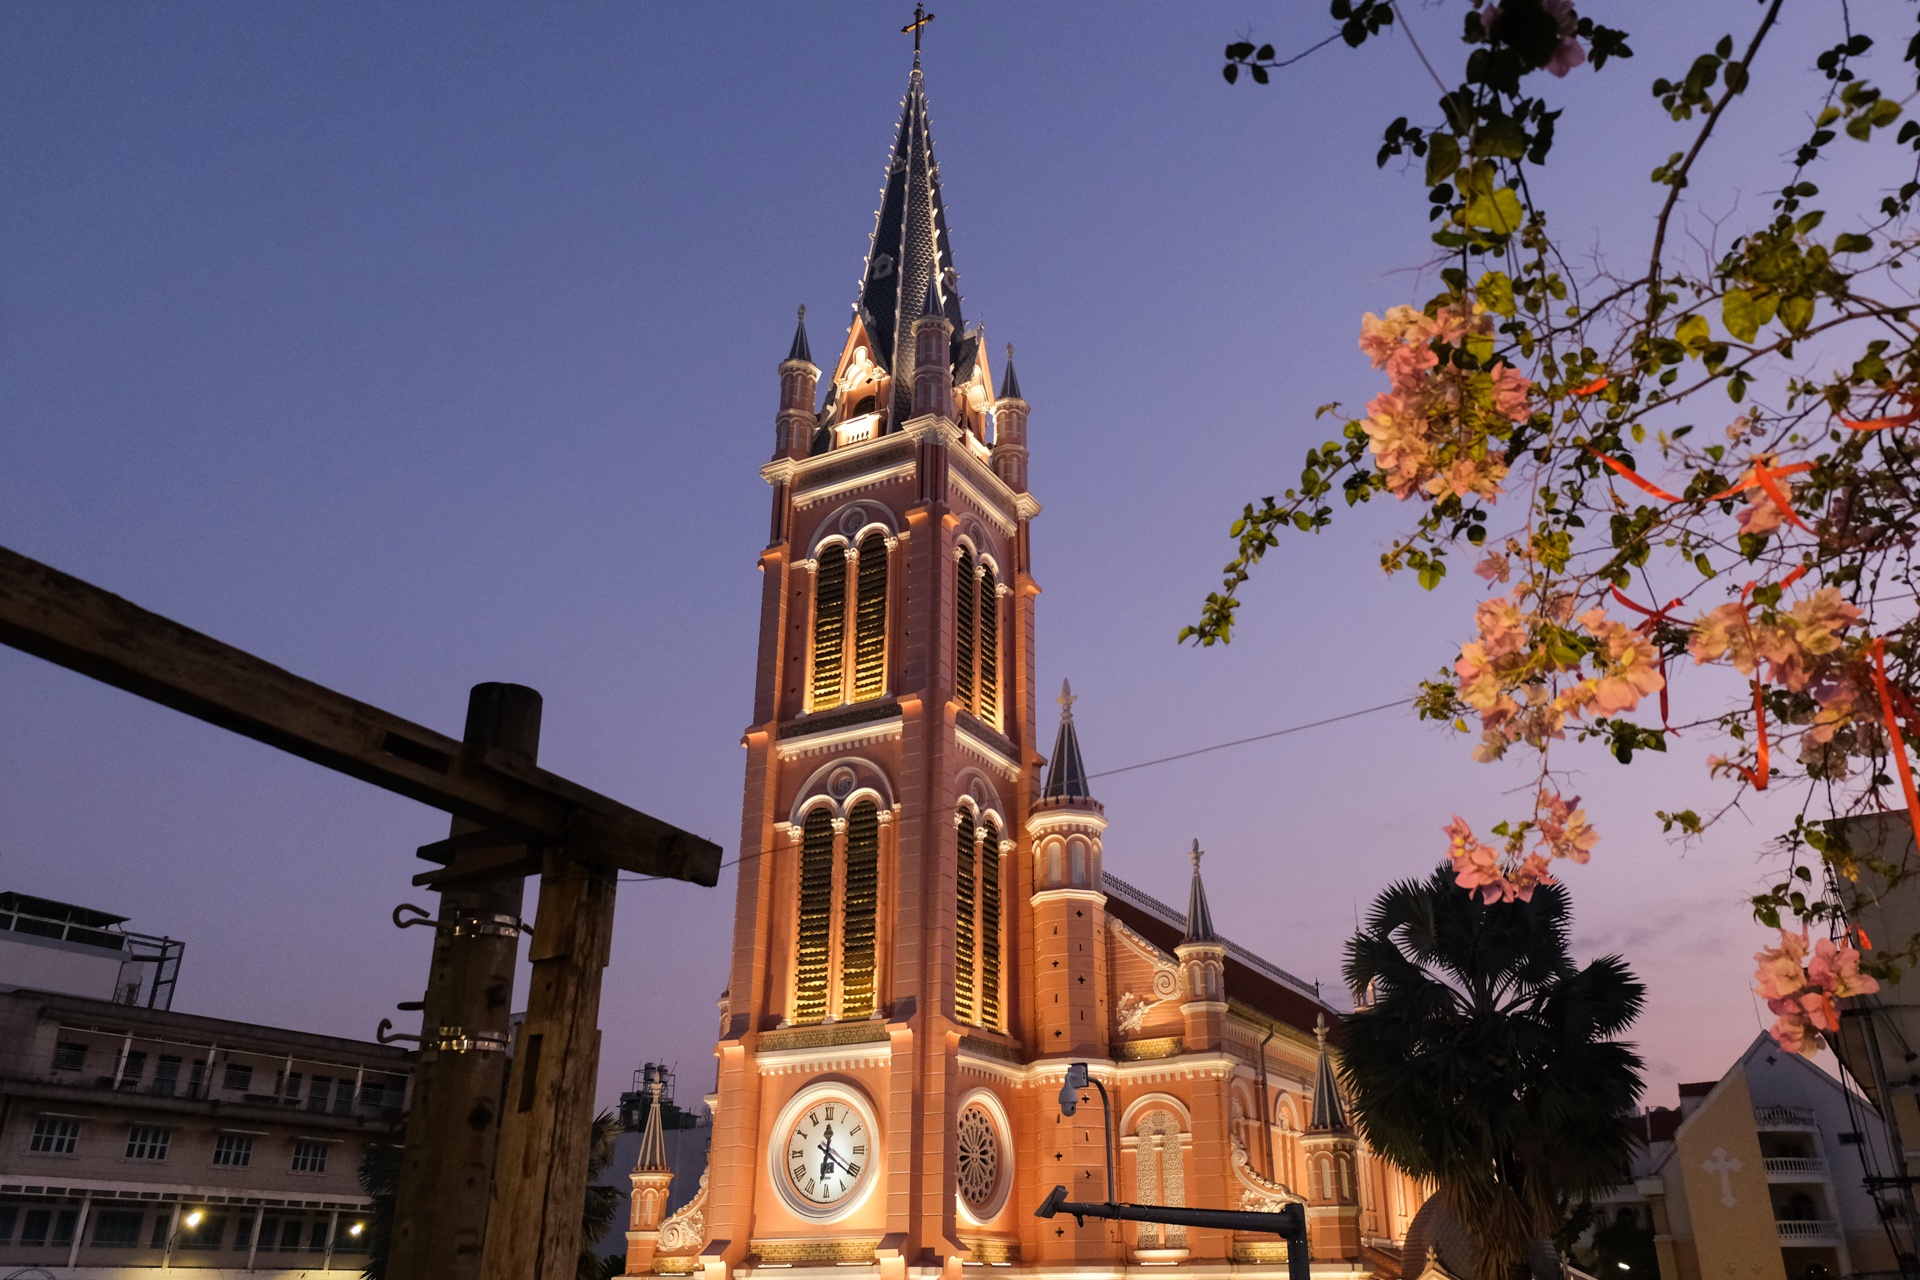 Hàng trăm khách châu Á đến nhà thờ Tân Định chụp ảnh mỗi ngày - ảnh 1